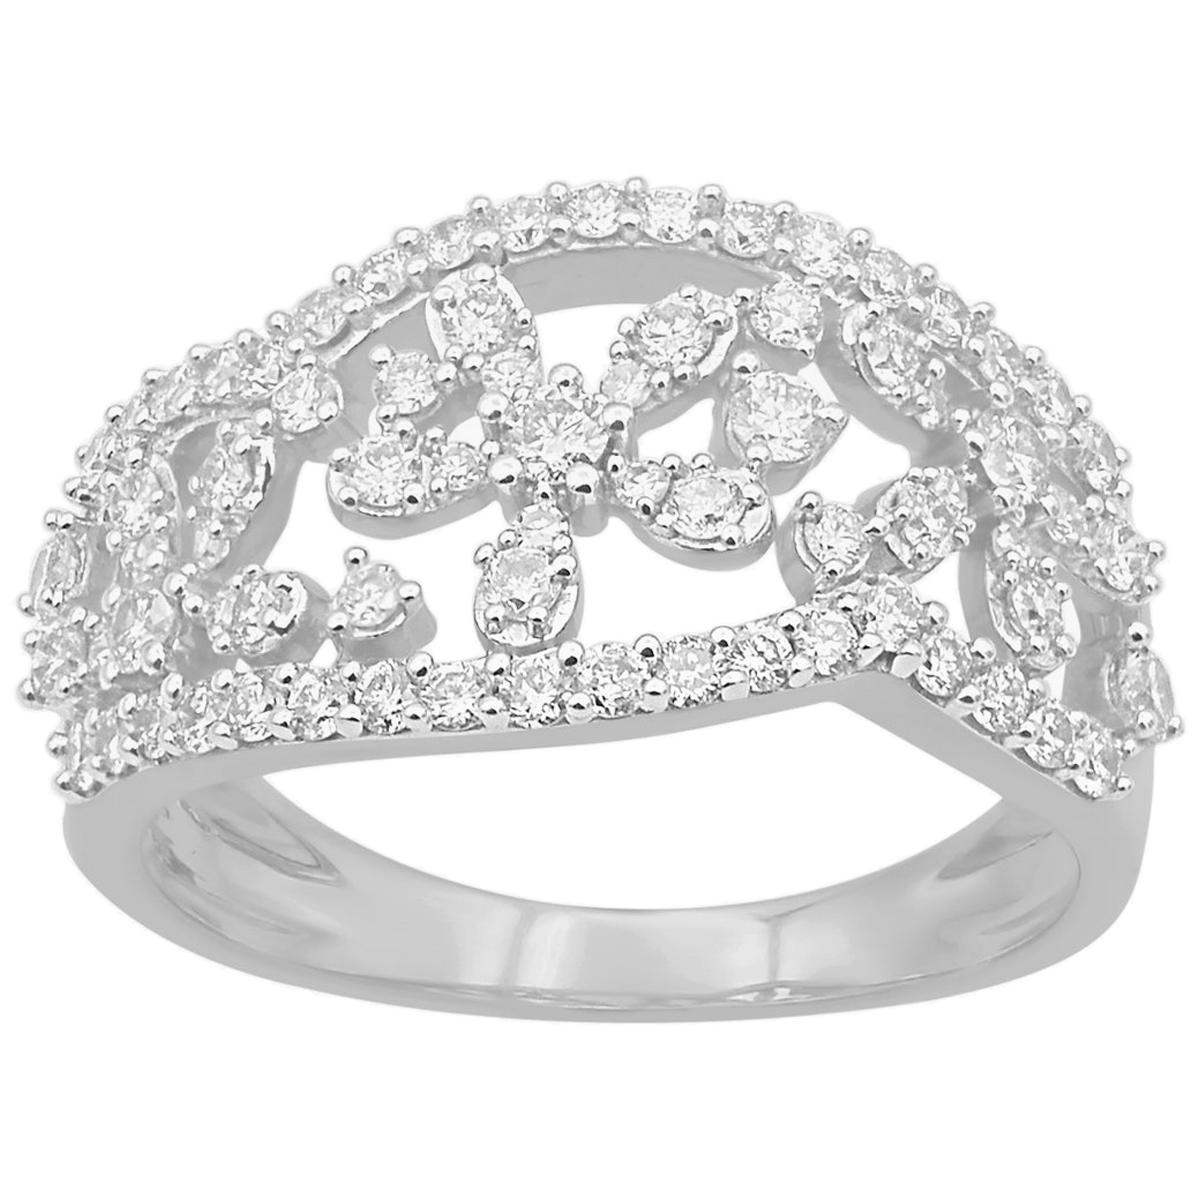 TJD 0.75 Carat Round Diamond 14 Karat White Gold Floral Design Wedding Band Ring